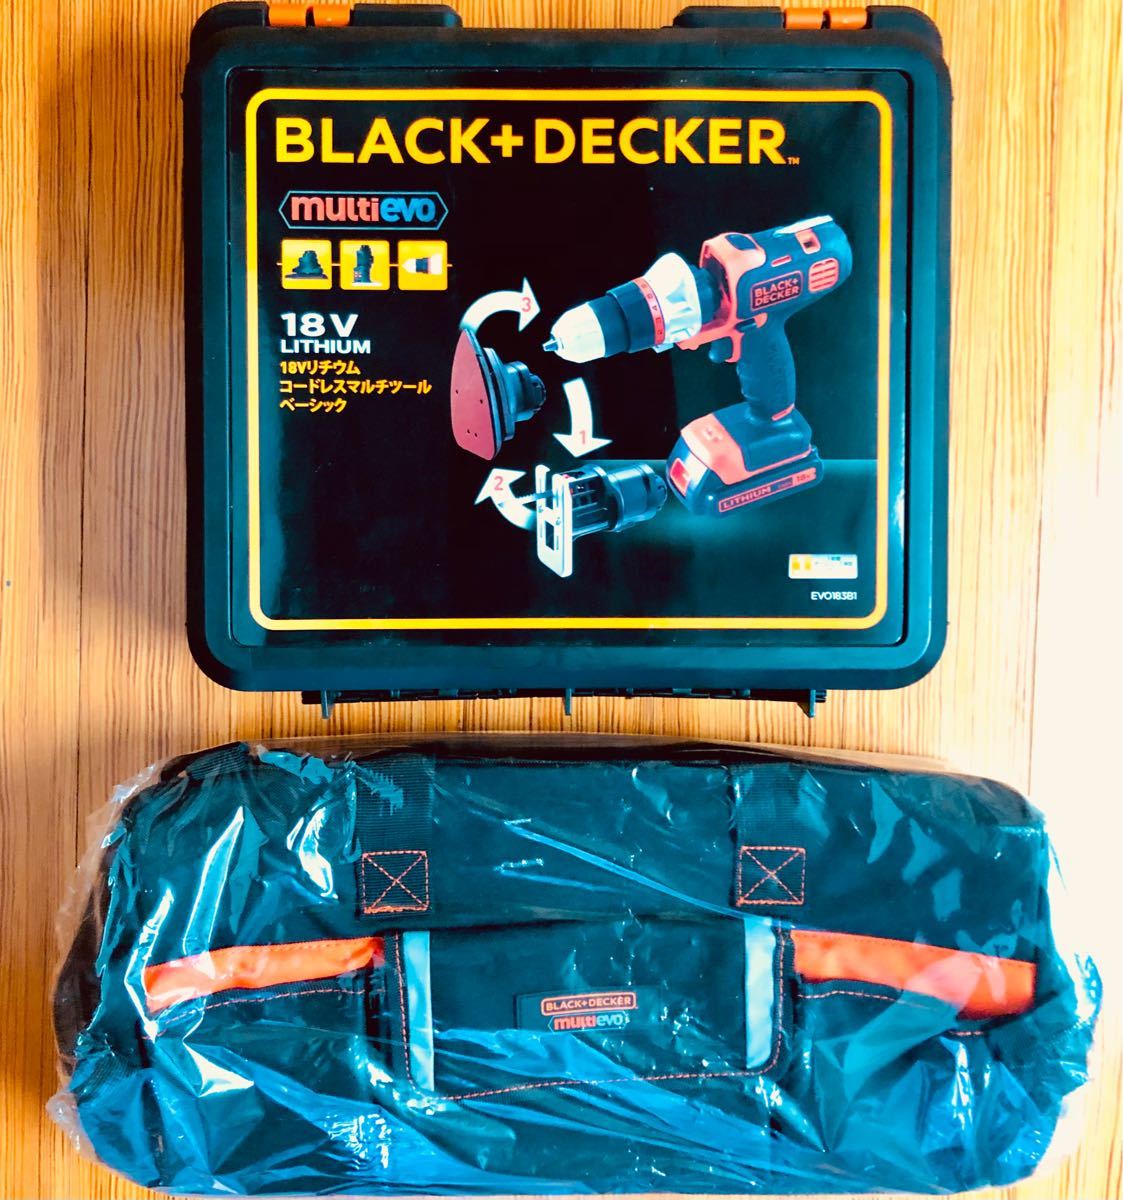 ブラックアンドデッカー(black+decker) マルチツール ベーシック 18V